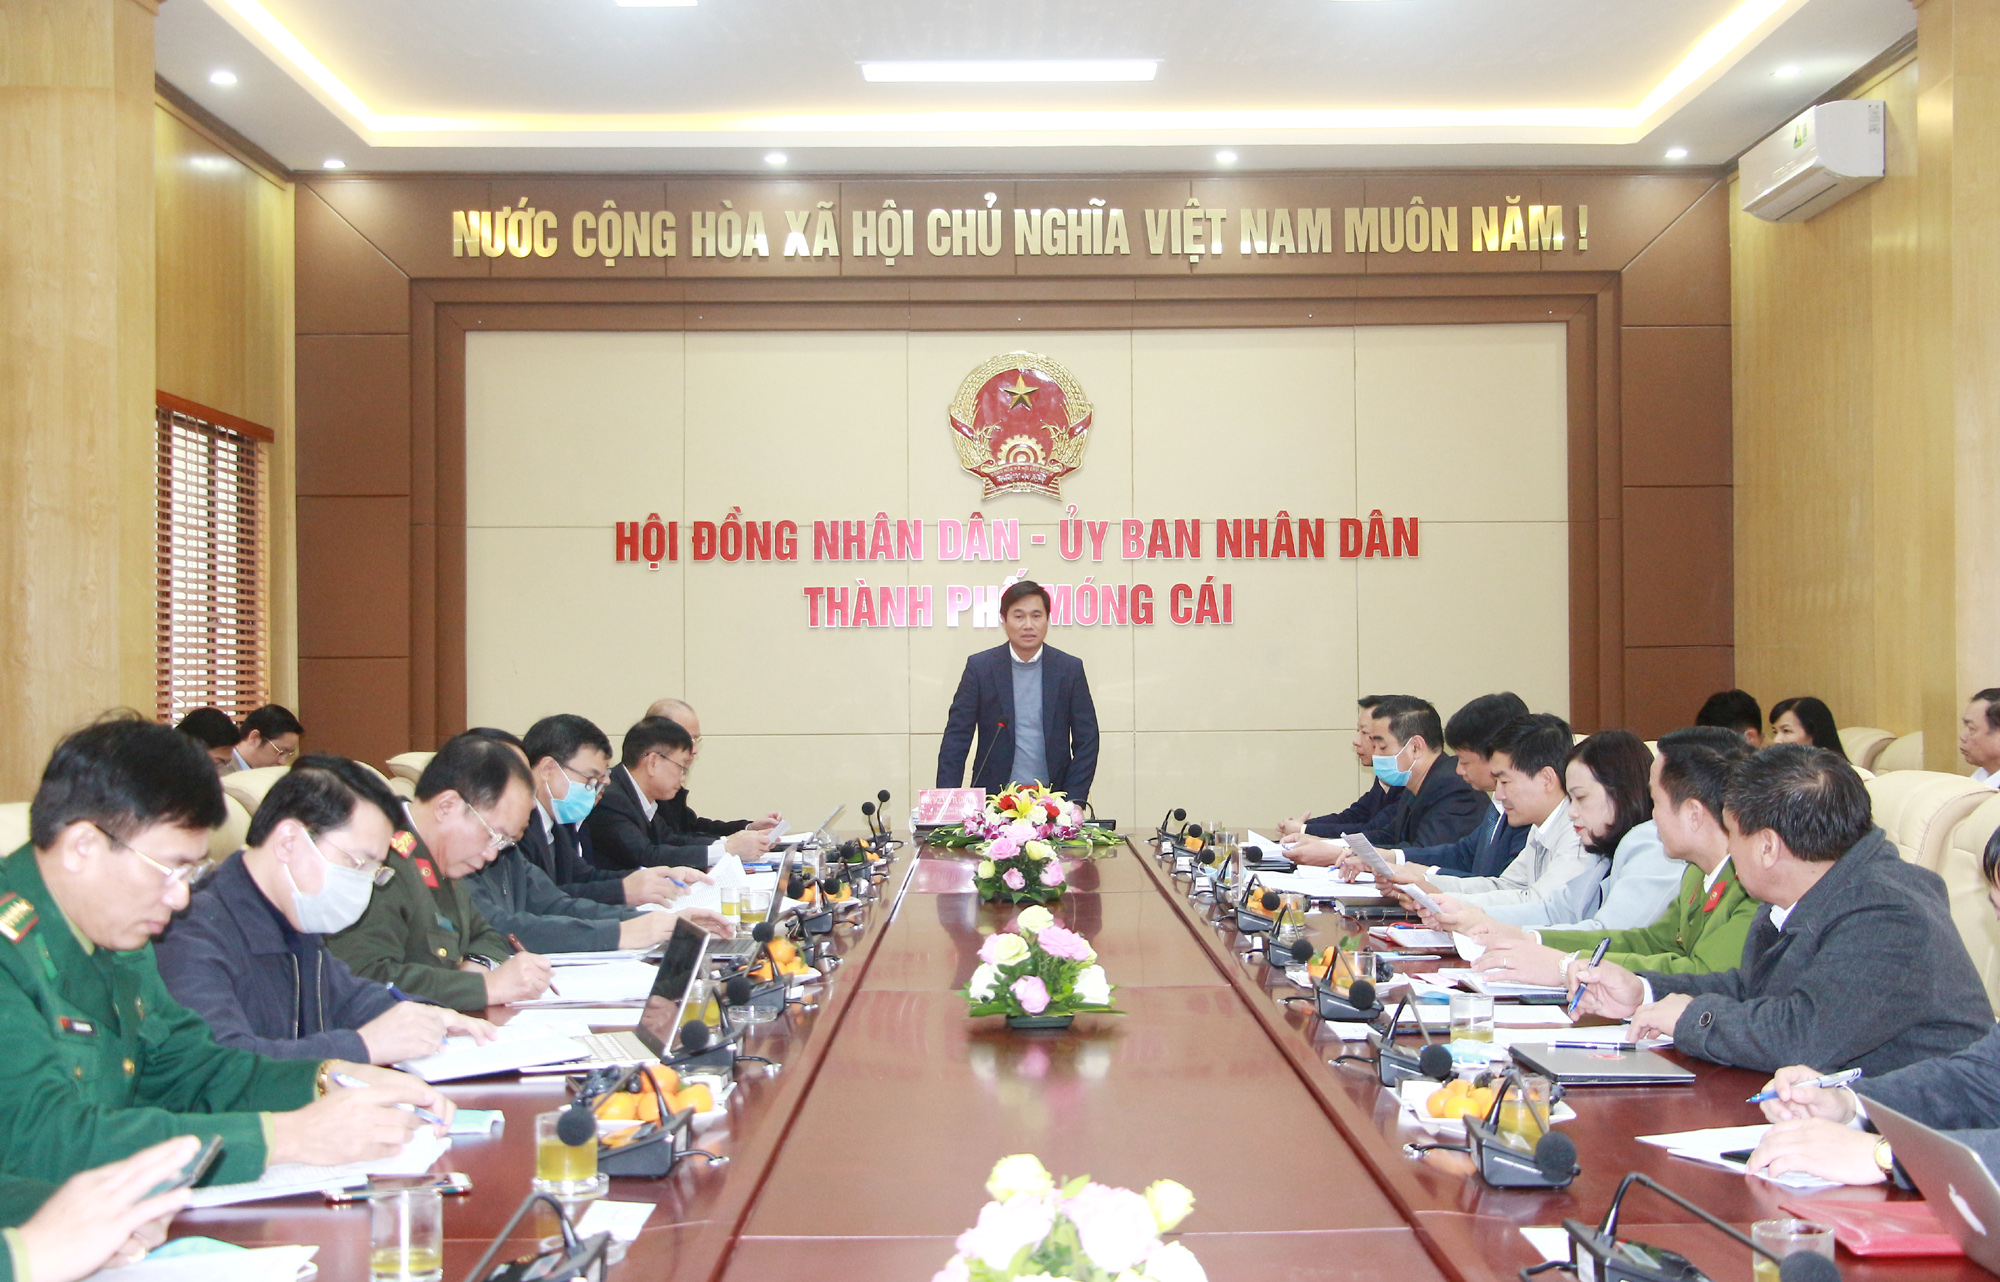 Đồng chí Nguyễn Tường Văn, Chủ tịch UBND tỉnh, phát biểu kết luận buổi làm việc.